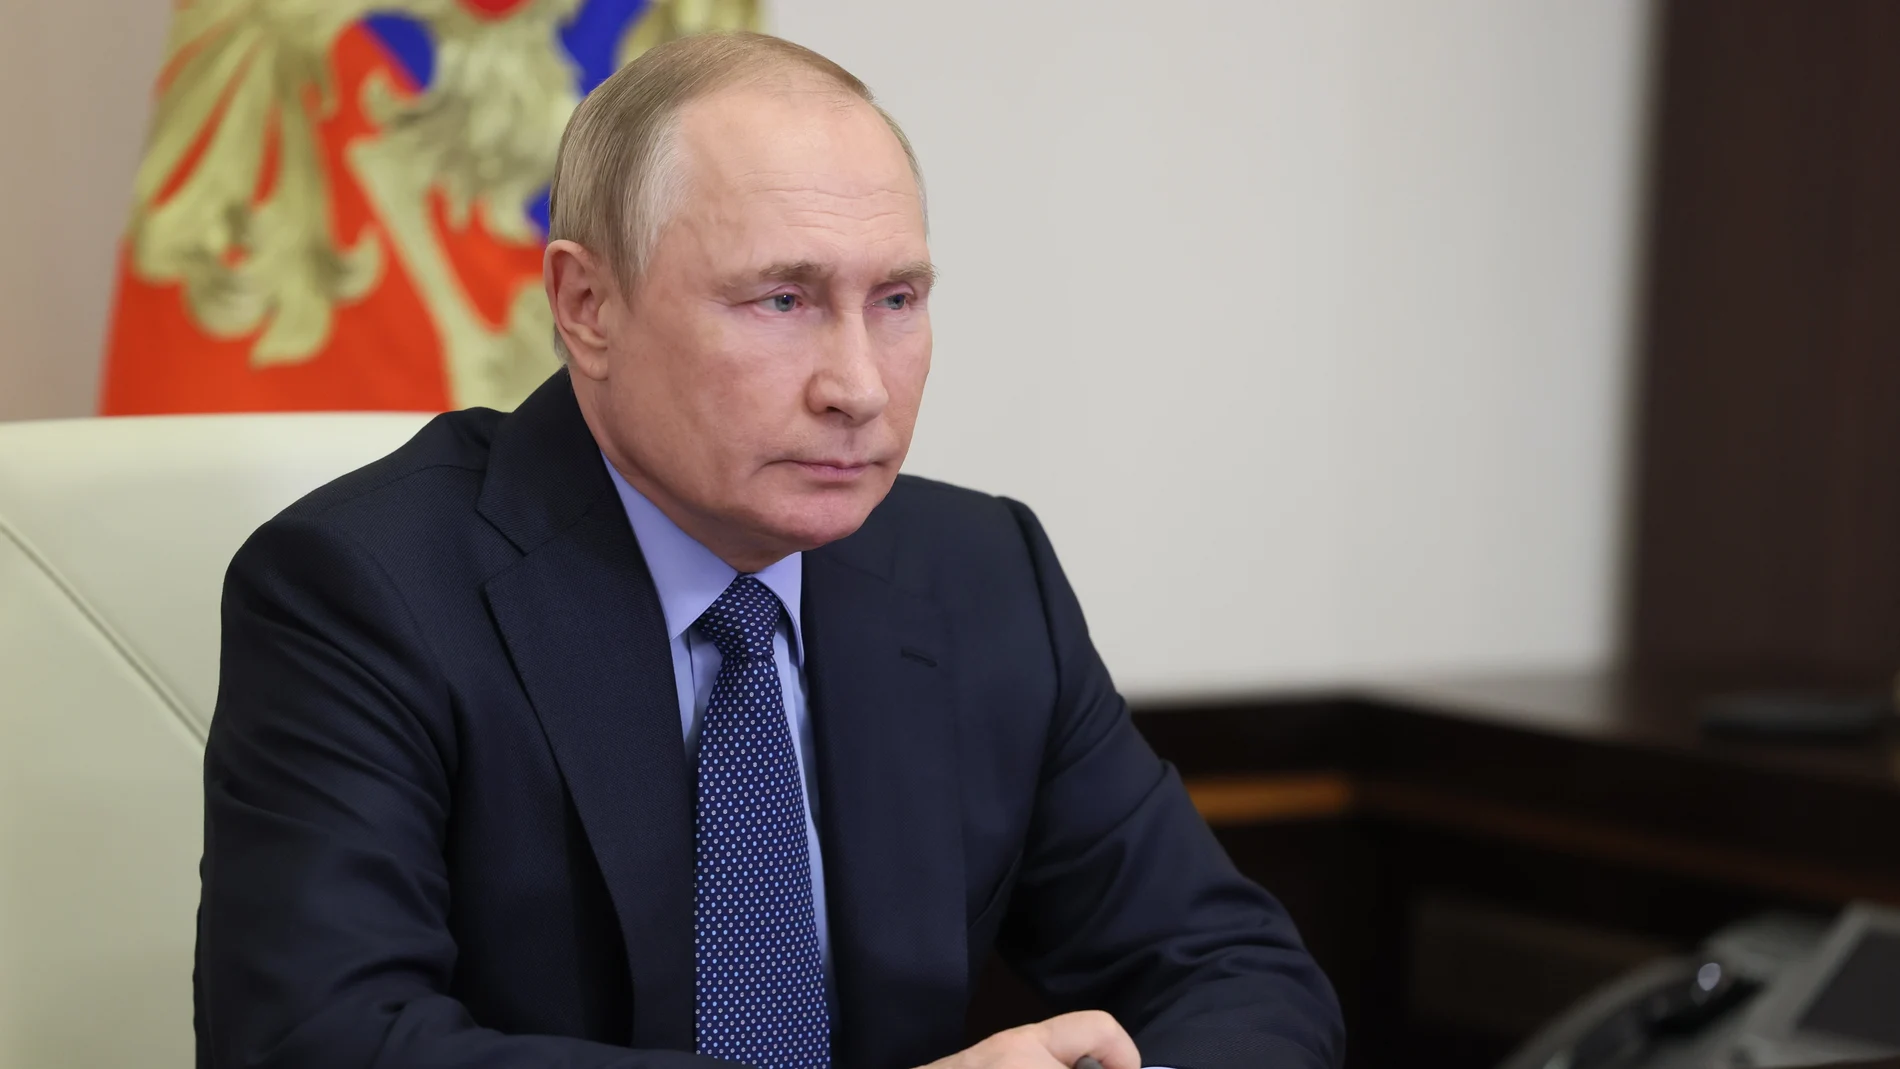 El presidente ruso, Vladimir Putin, asiste a una reunión por videoconferencia en la residencia de Novo-Ogarevo, a las afueras de Moscú